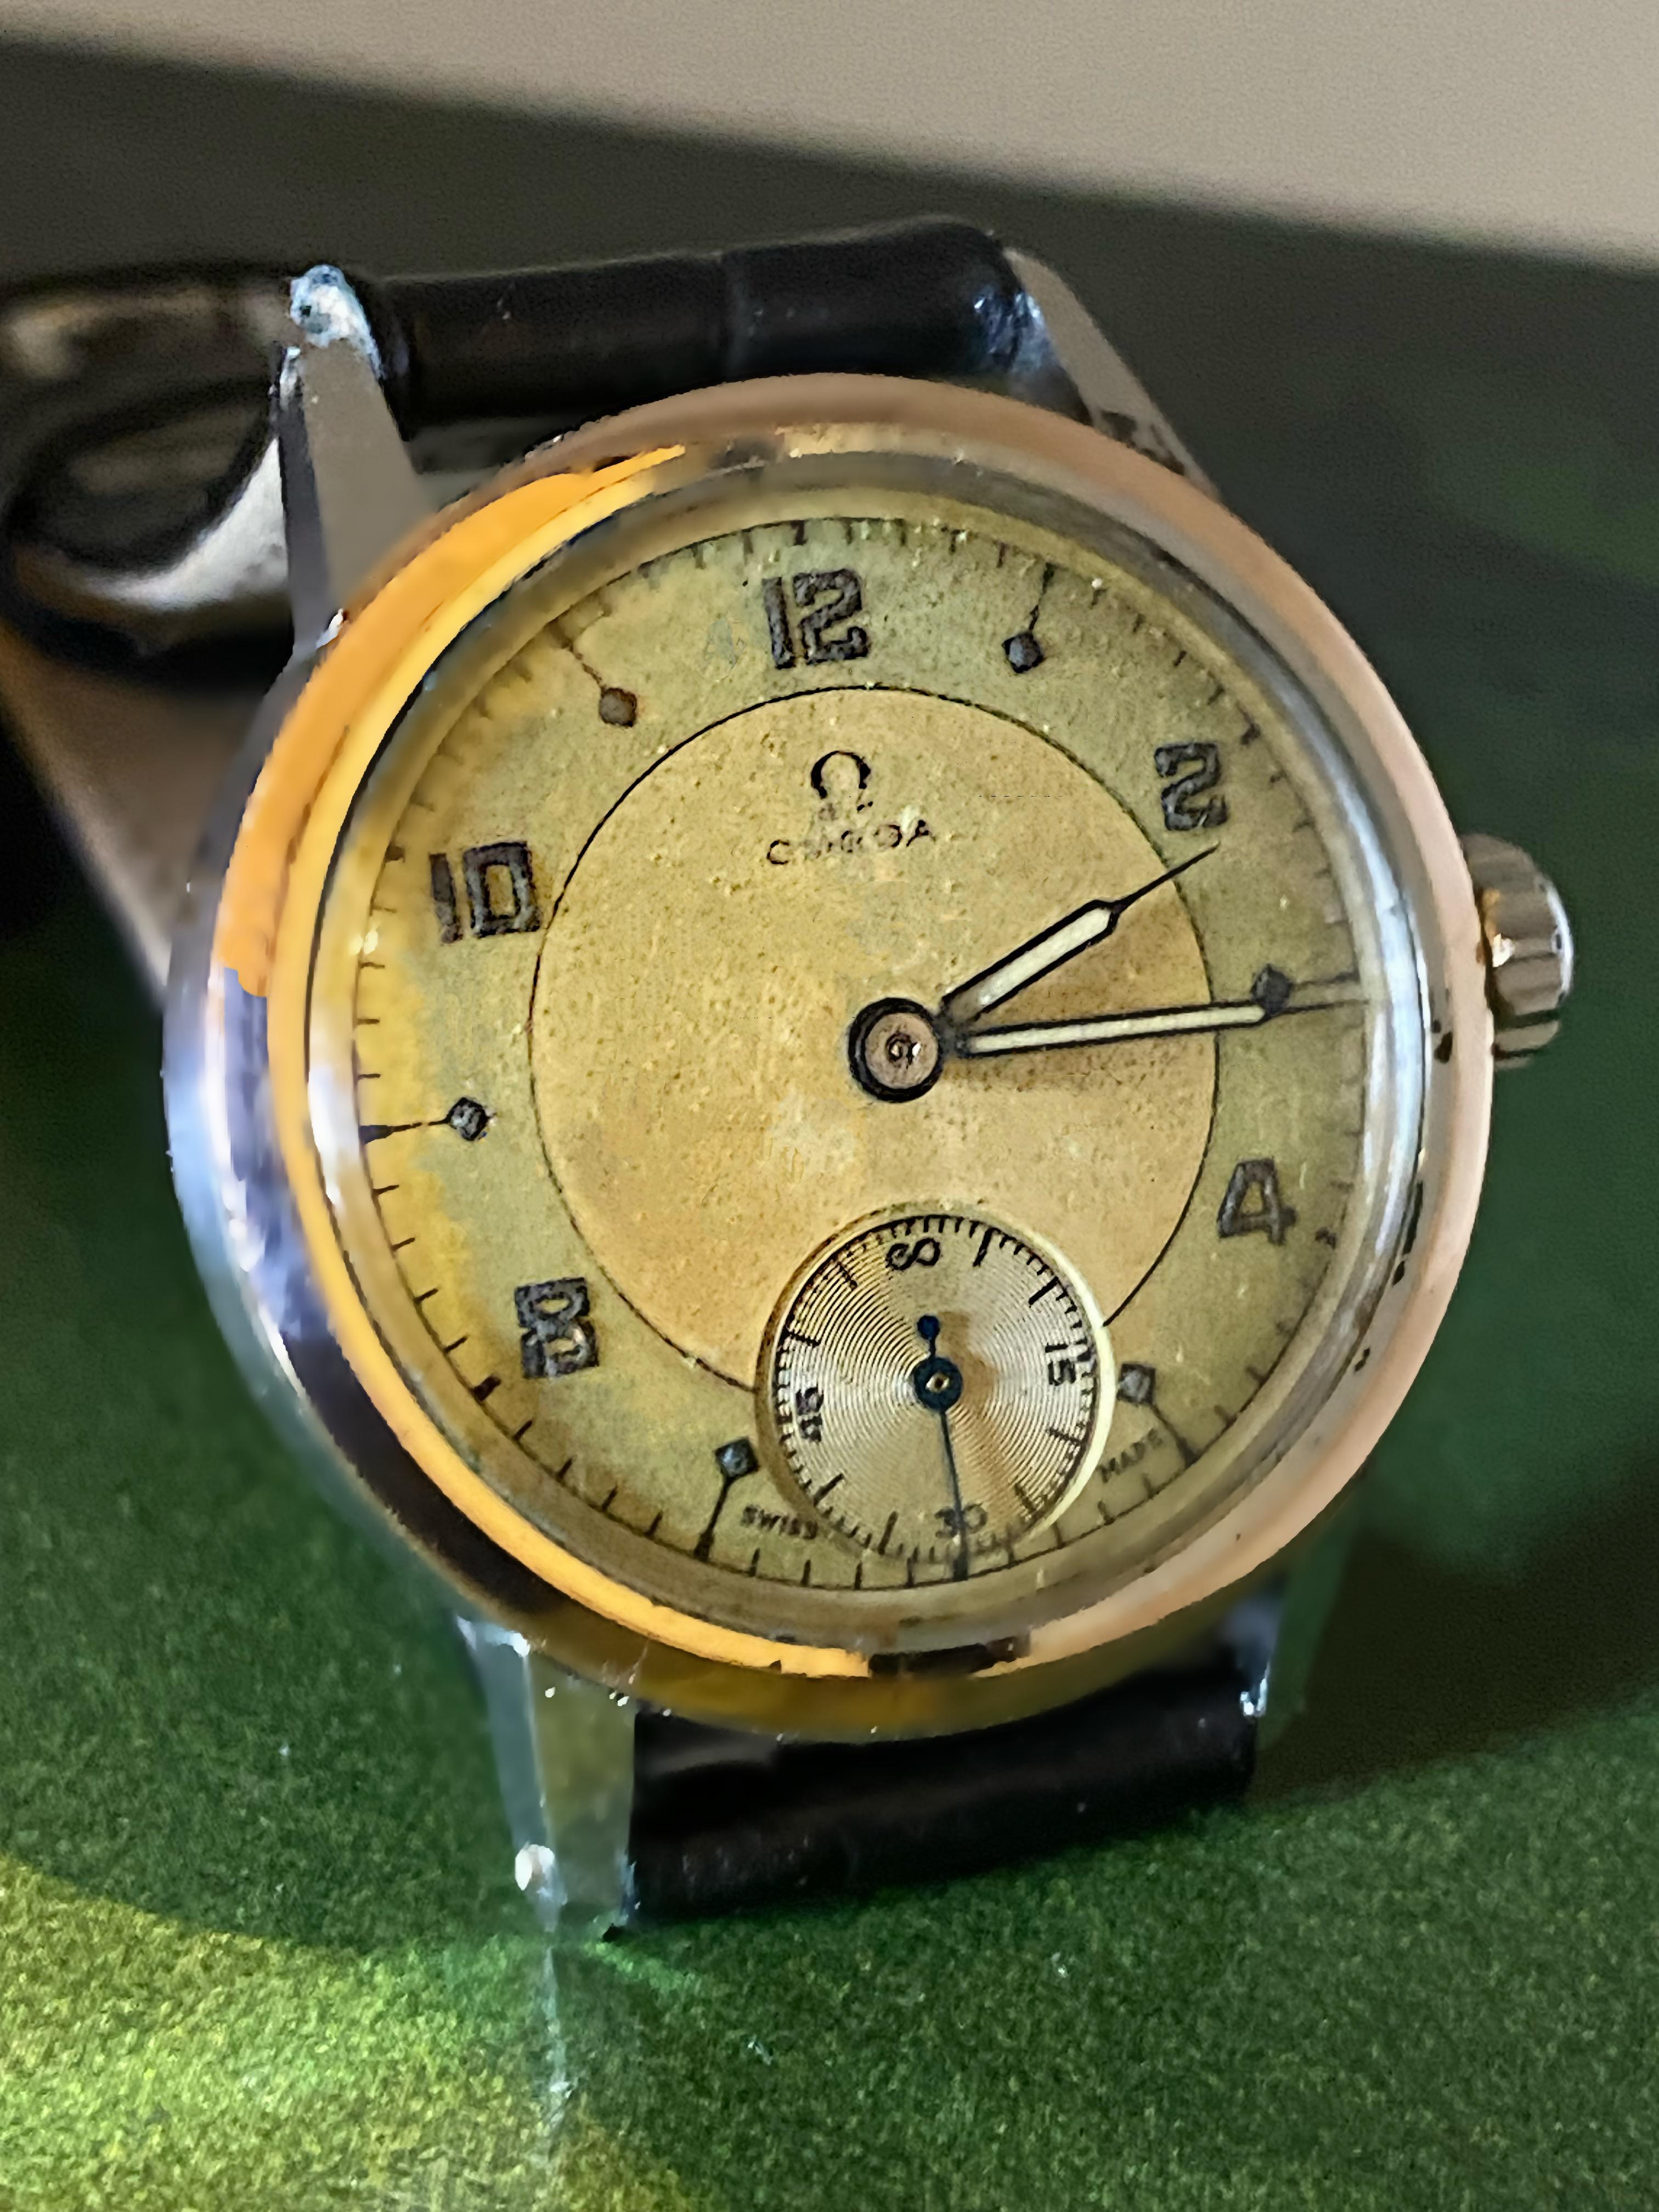 Uhren von Omega werden seit langem für ihre Funktionalität, Attraktivität und Stärke bewundert. 

Bei diesem Exemplar handelt es sich um eine Militäruhr aus der Zeit um 1943. 


~~~


Er ist in einem erstaunlichen Originalzustand, hervorragend